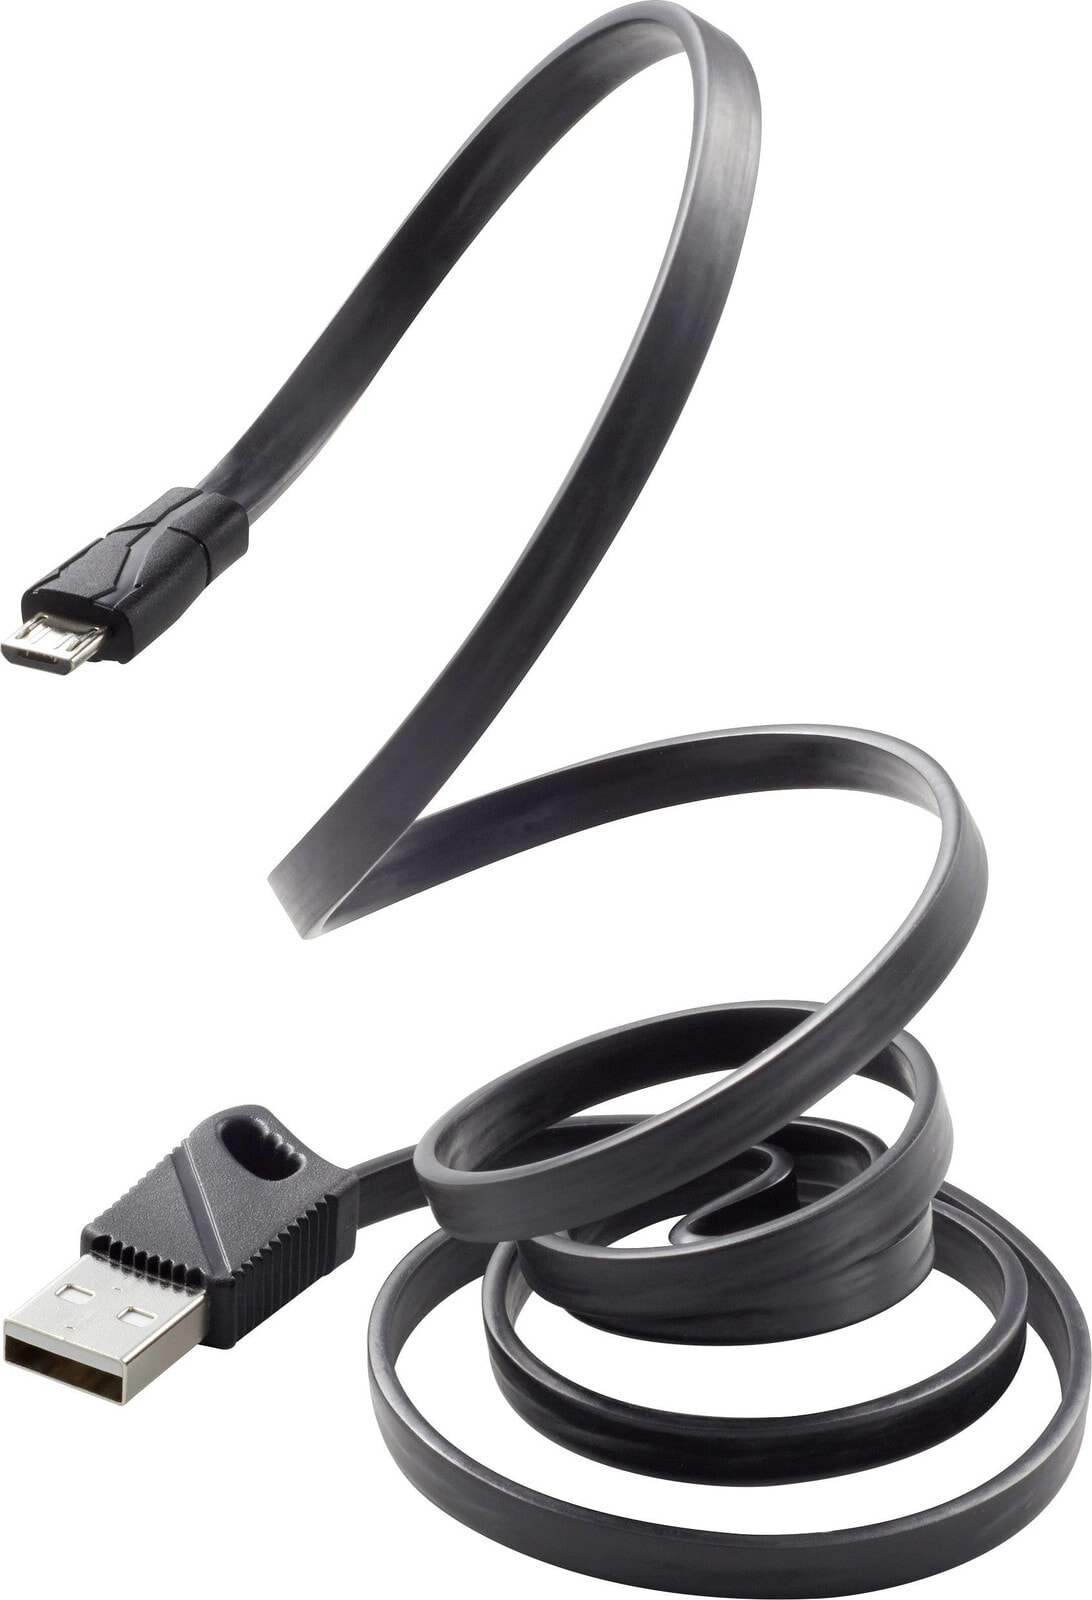 RF-3376010 - 1 m - USB A - Micro-USB B - USB 2.0 - 480 Mbit/s - Black